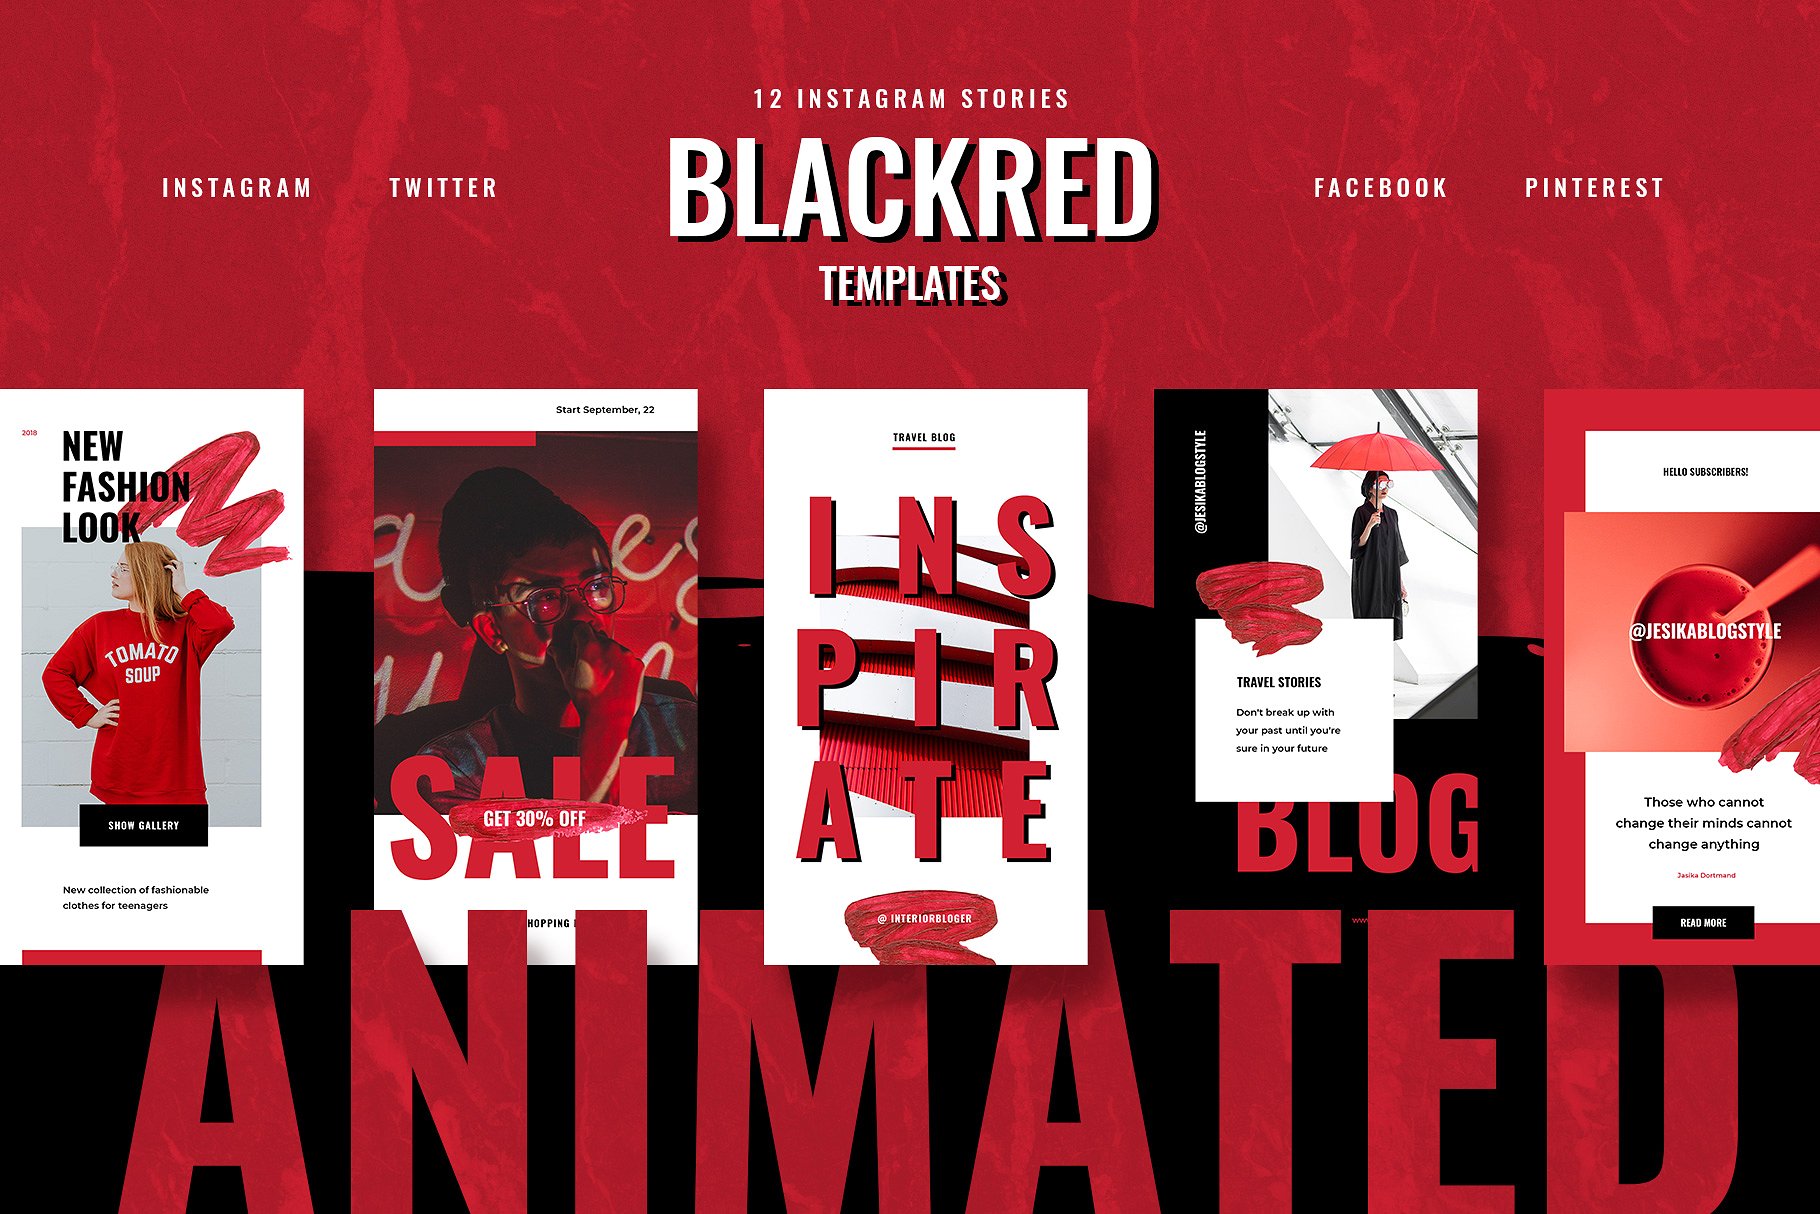 色彩活泼的红黑配色Ins故事贴图模板第一素材精选 ANIMATED Blackred Instagram Stories插图